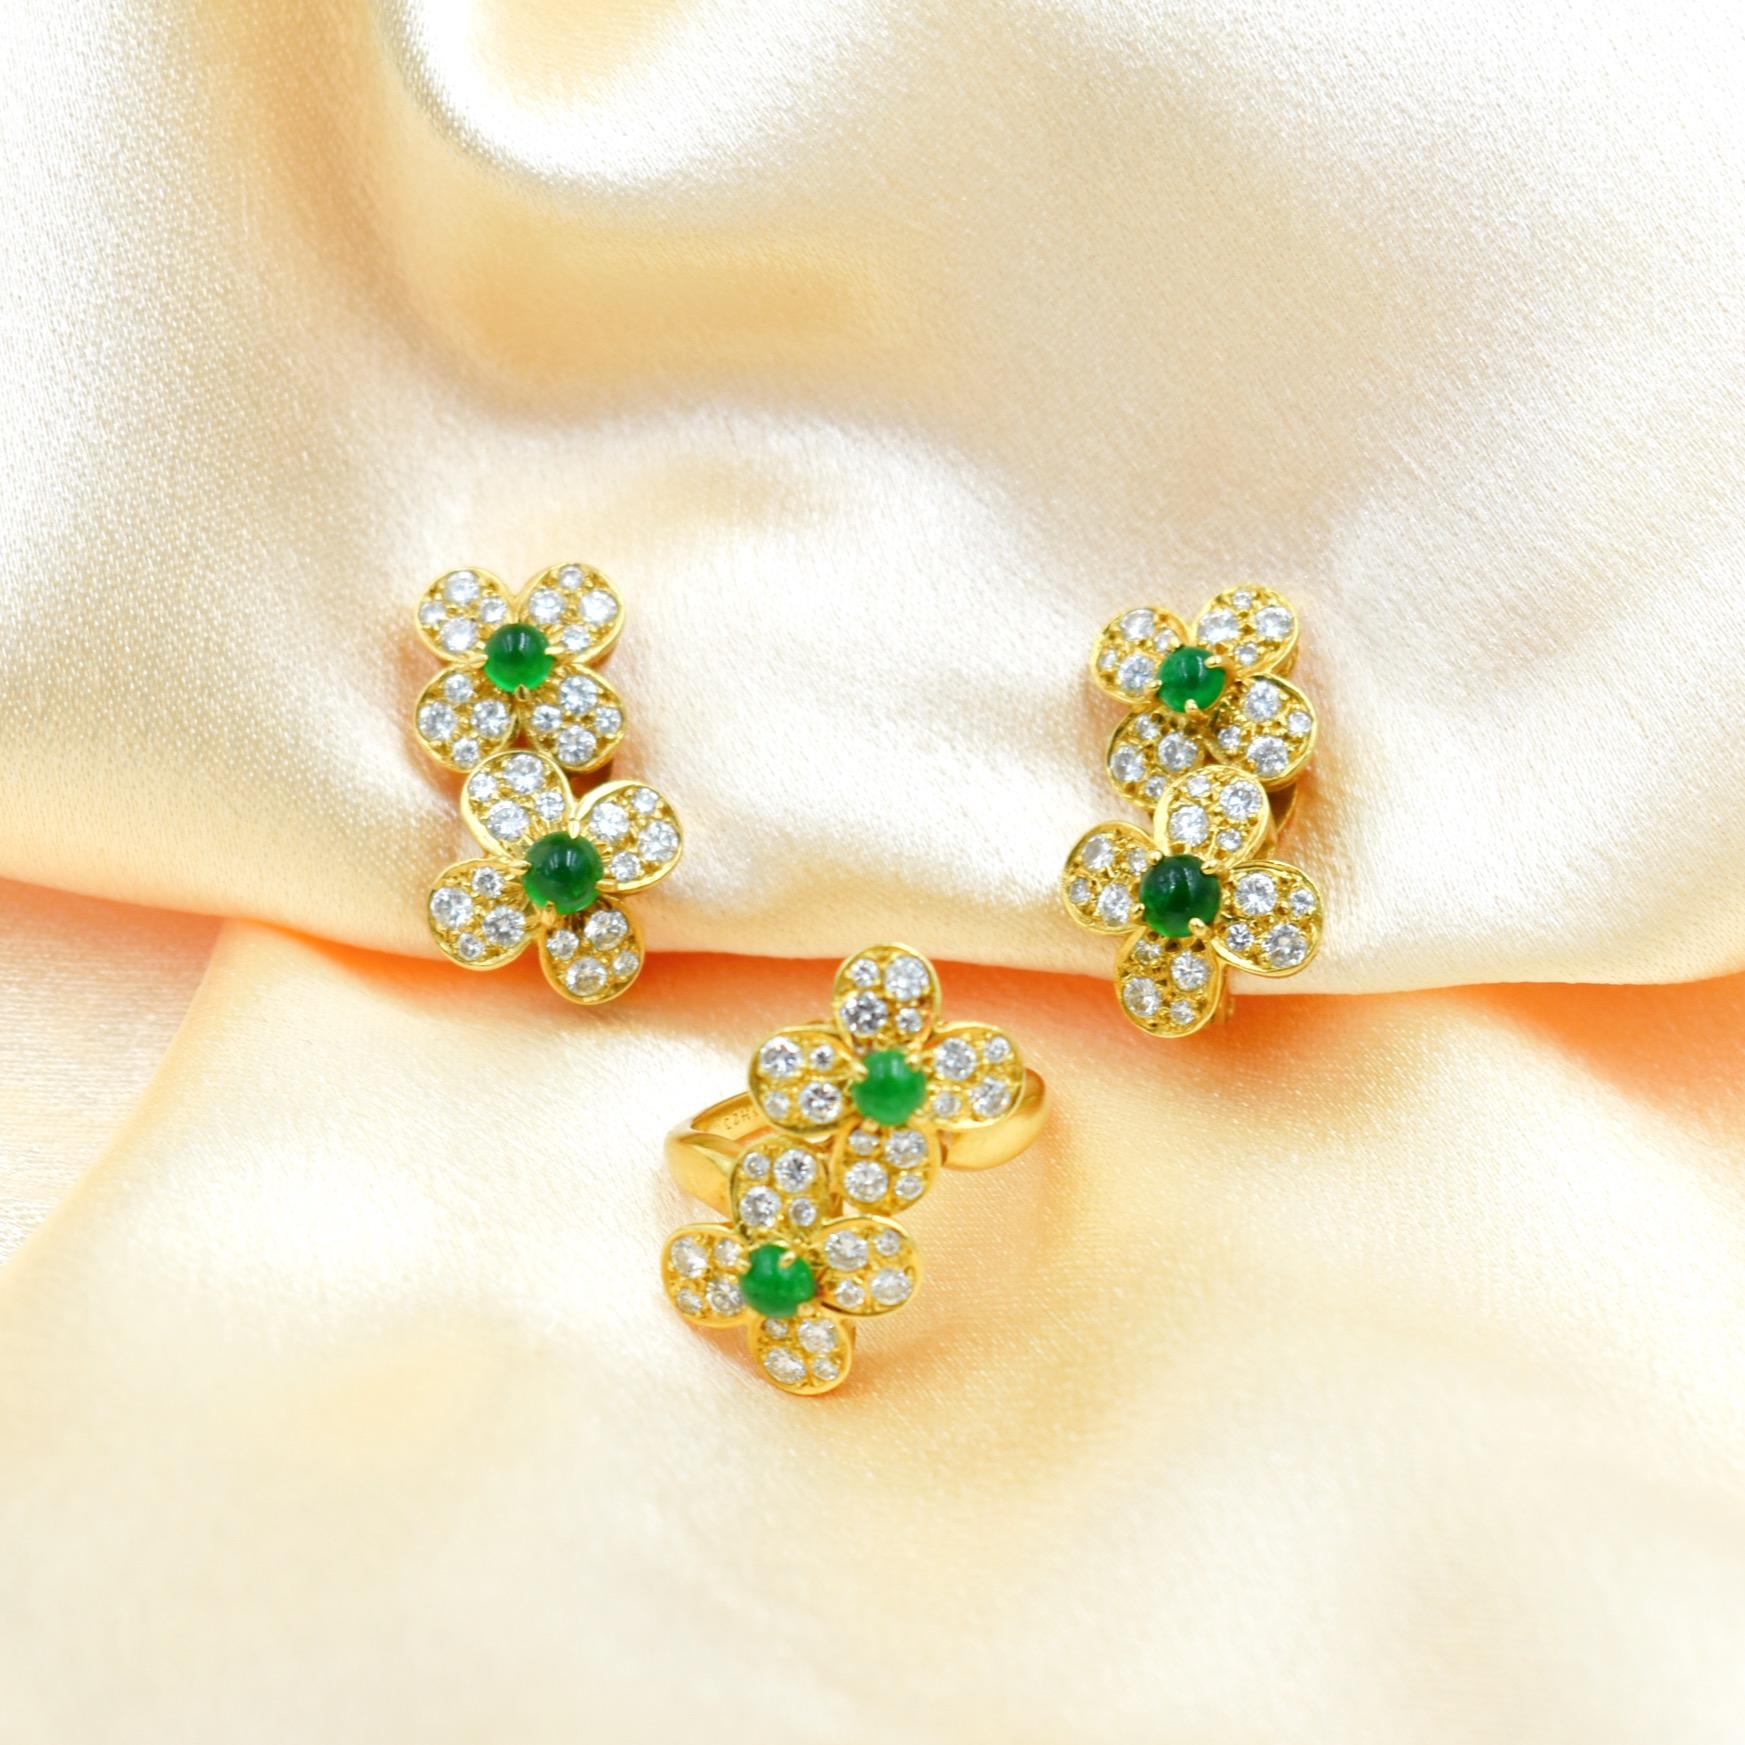 Vintage Van Cleef & Arpels Paris emeralds Diamond Earrings and Ring For Sale